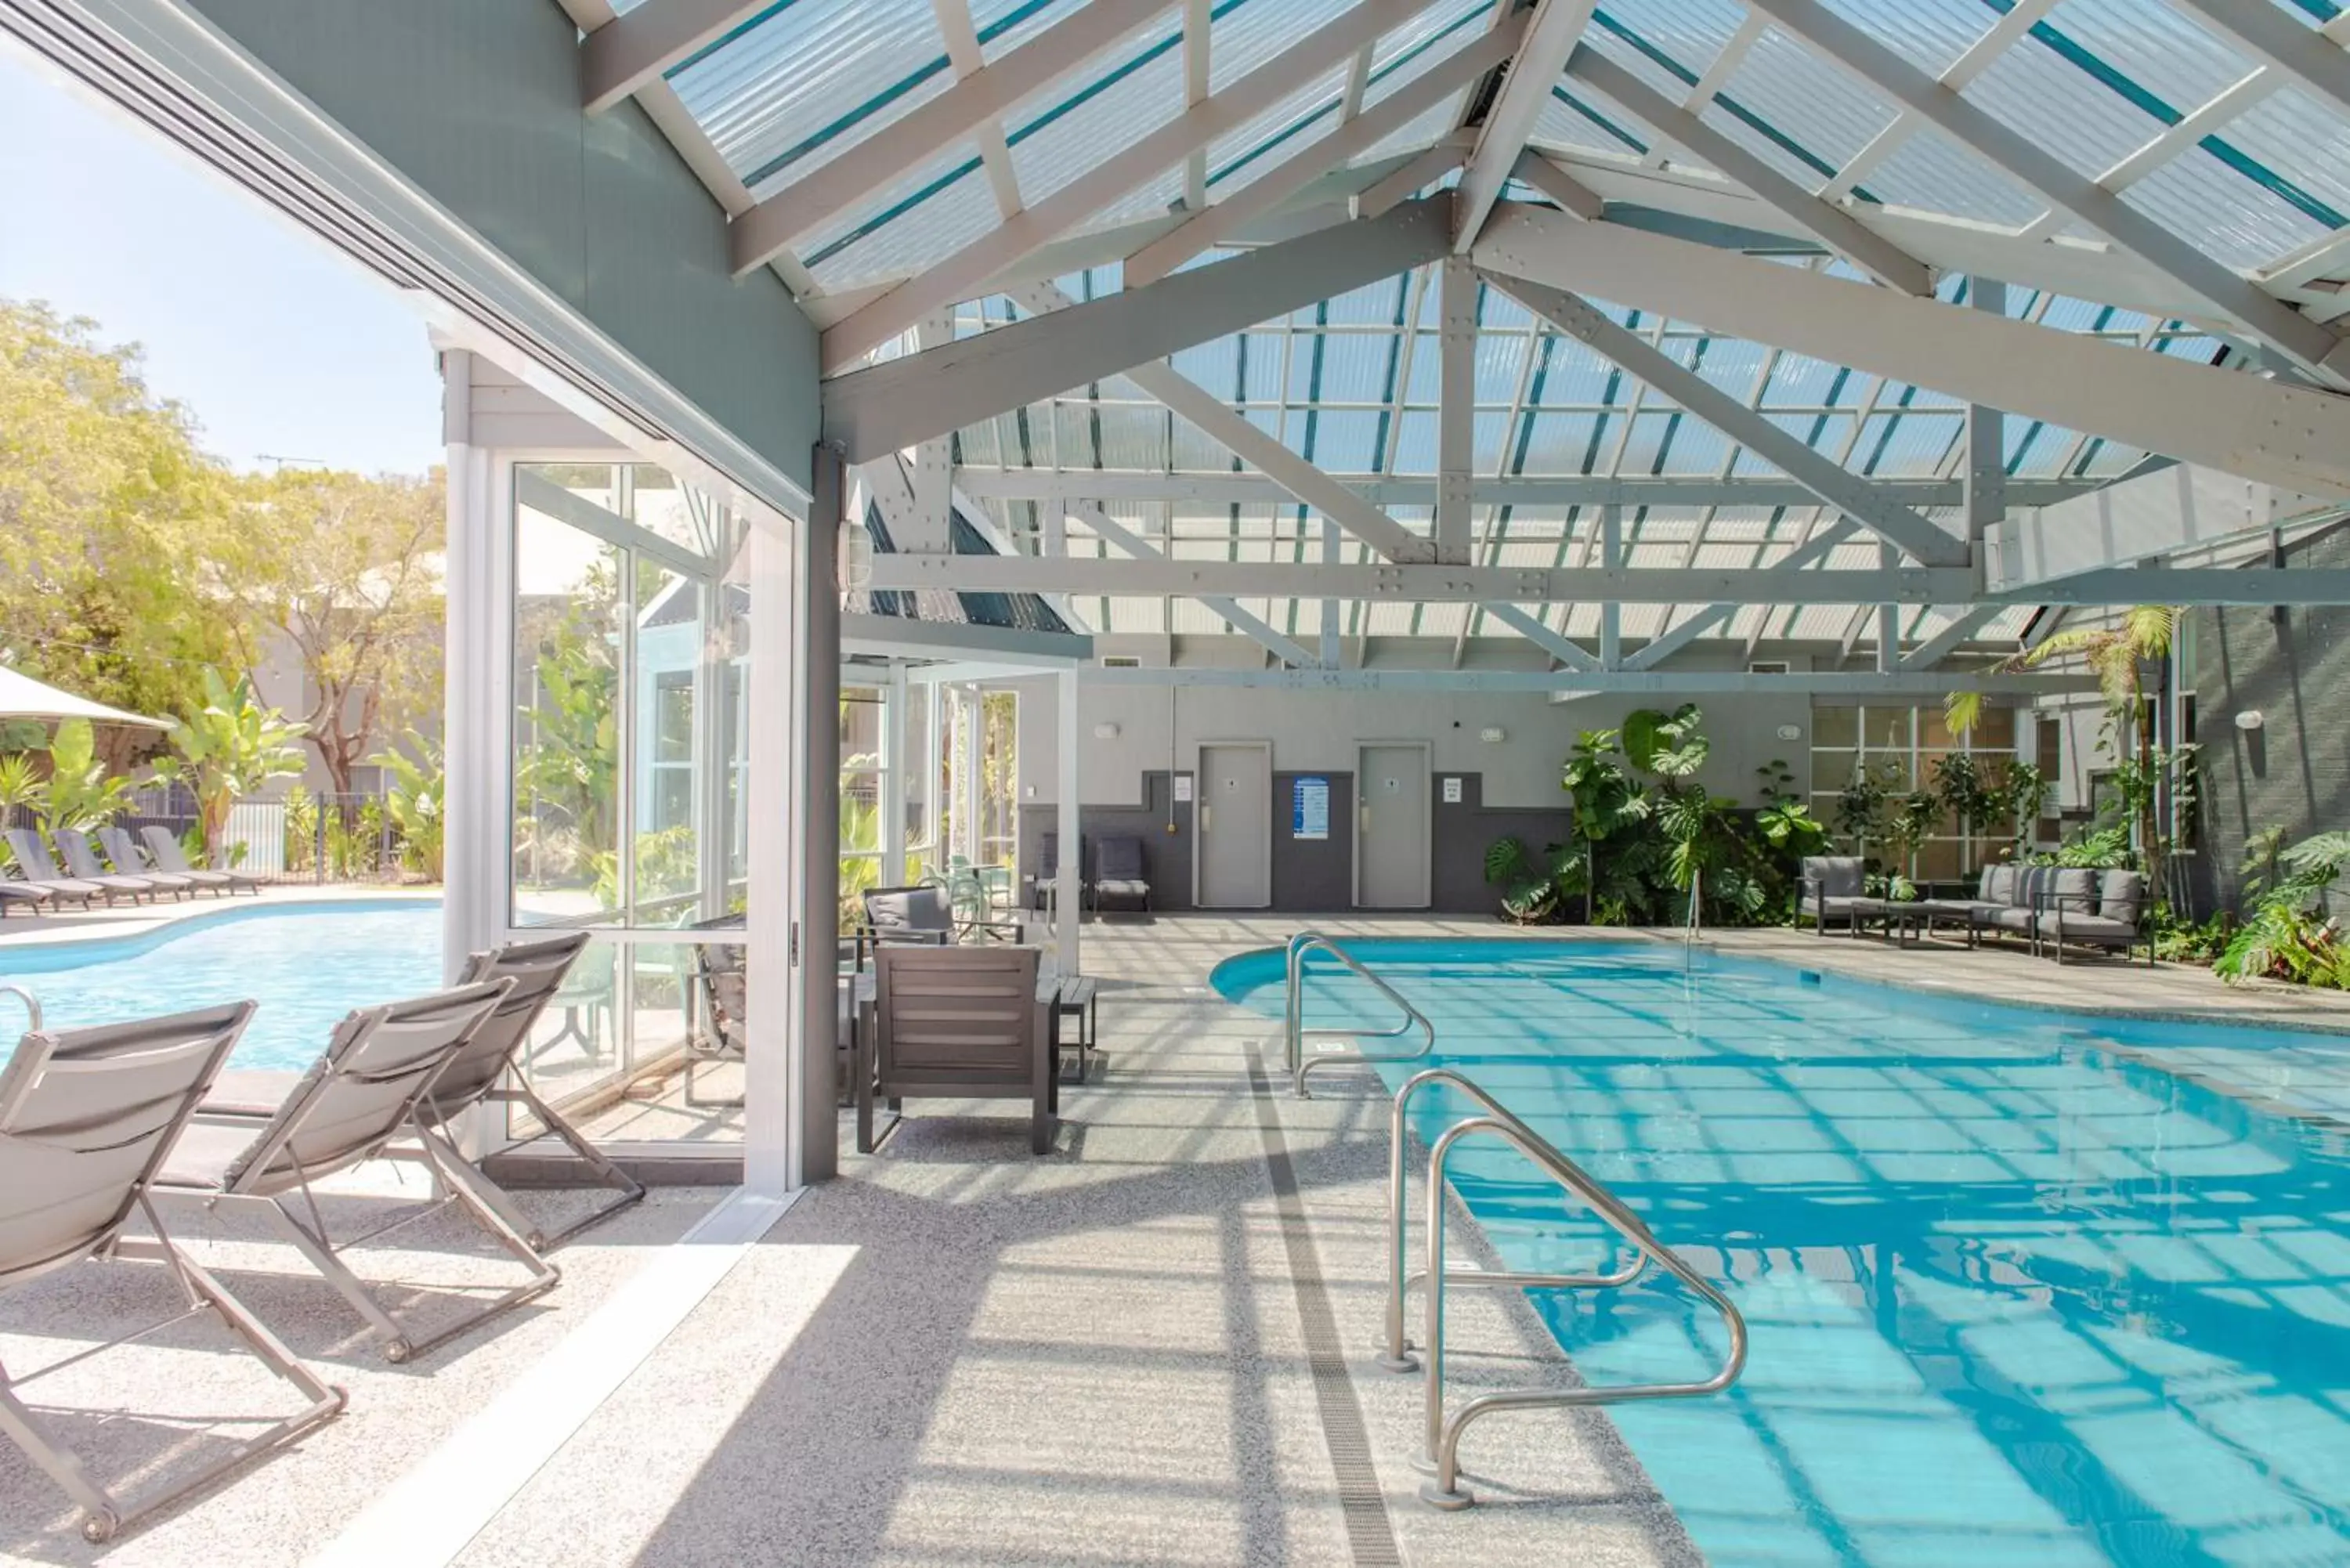 Swimming Pool in Broadwater Resort WA Tourism Awards 2022 Gold Winner